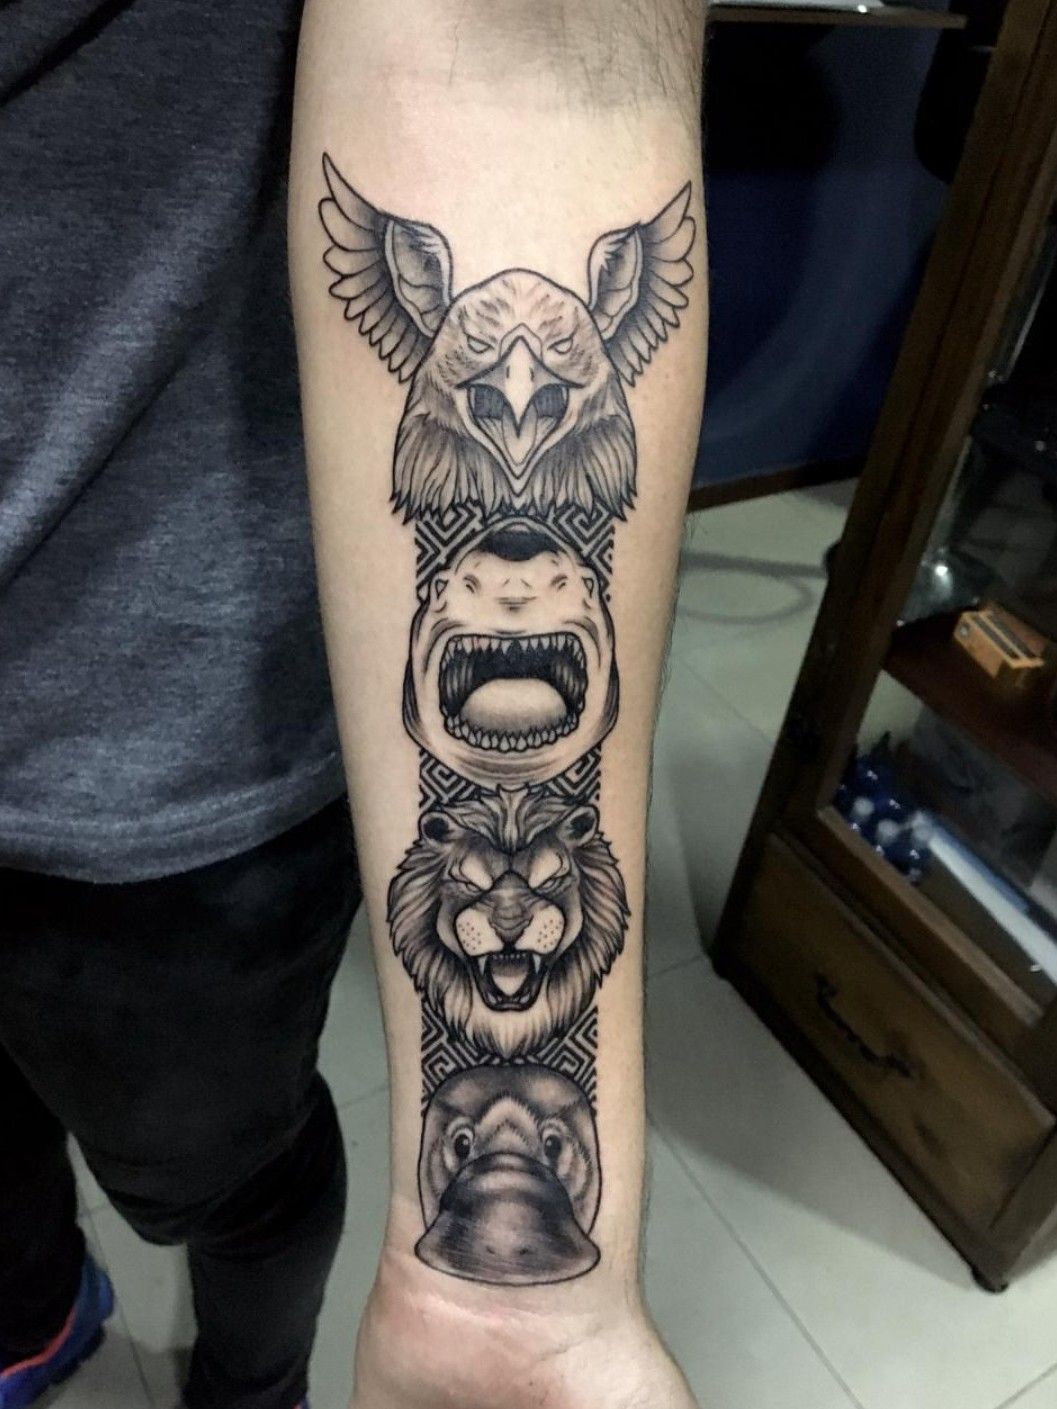 katt williams owl tattoo